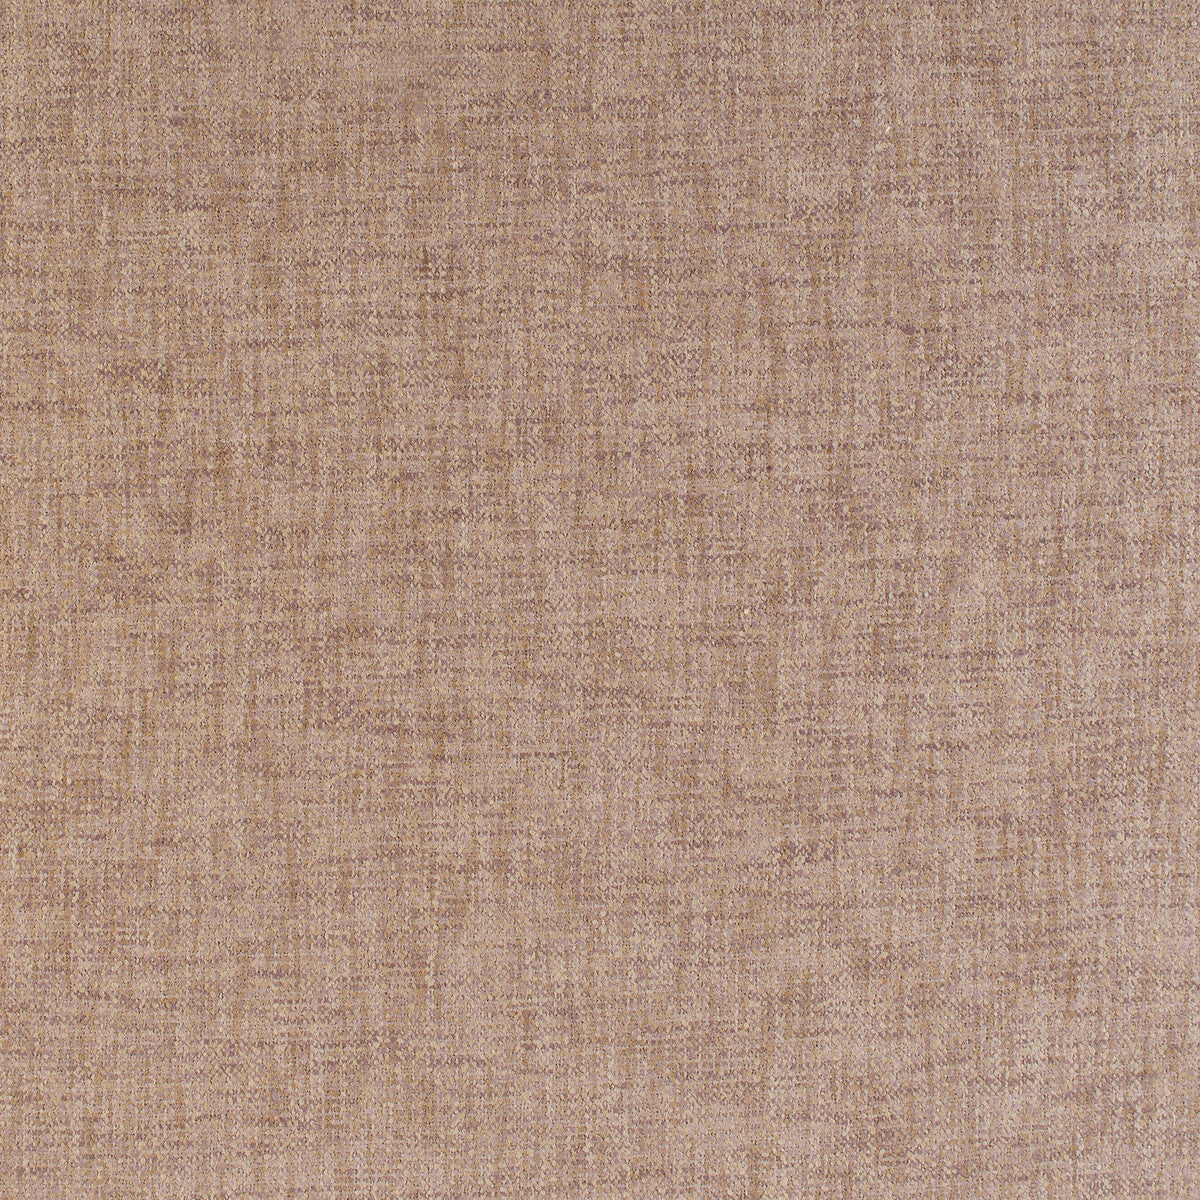 Kravet Basics fabric in 35455-10 color - pattern 35455.10.0 - by Kravet Basics